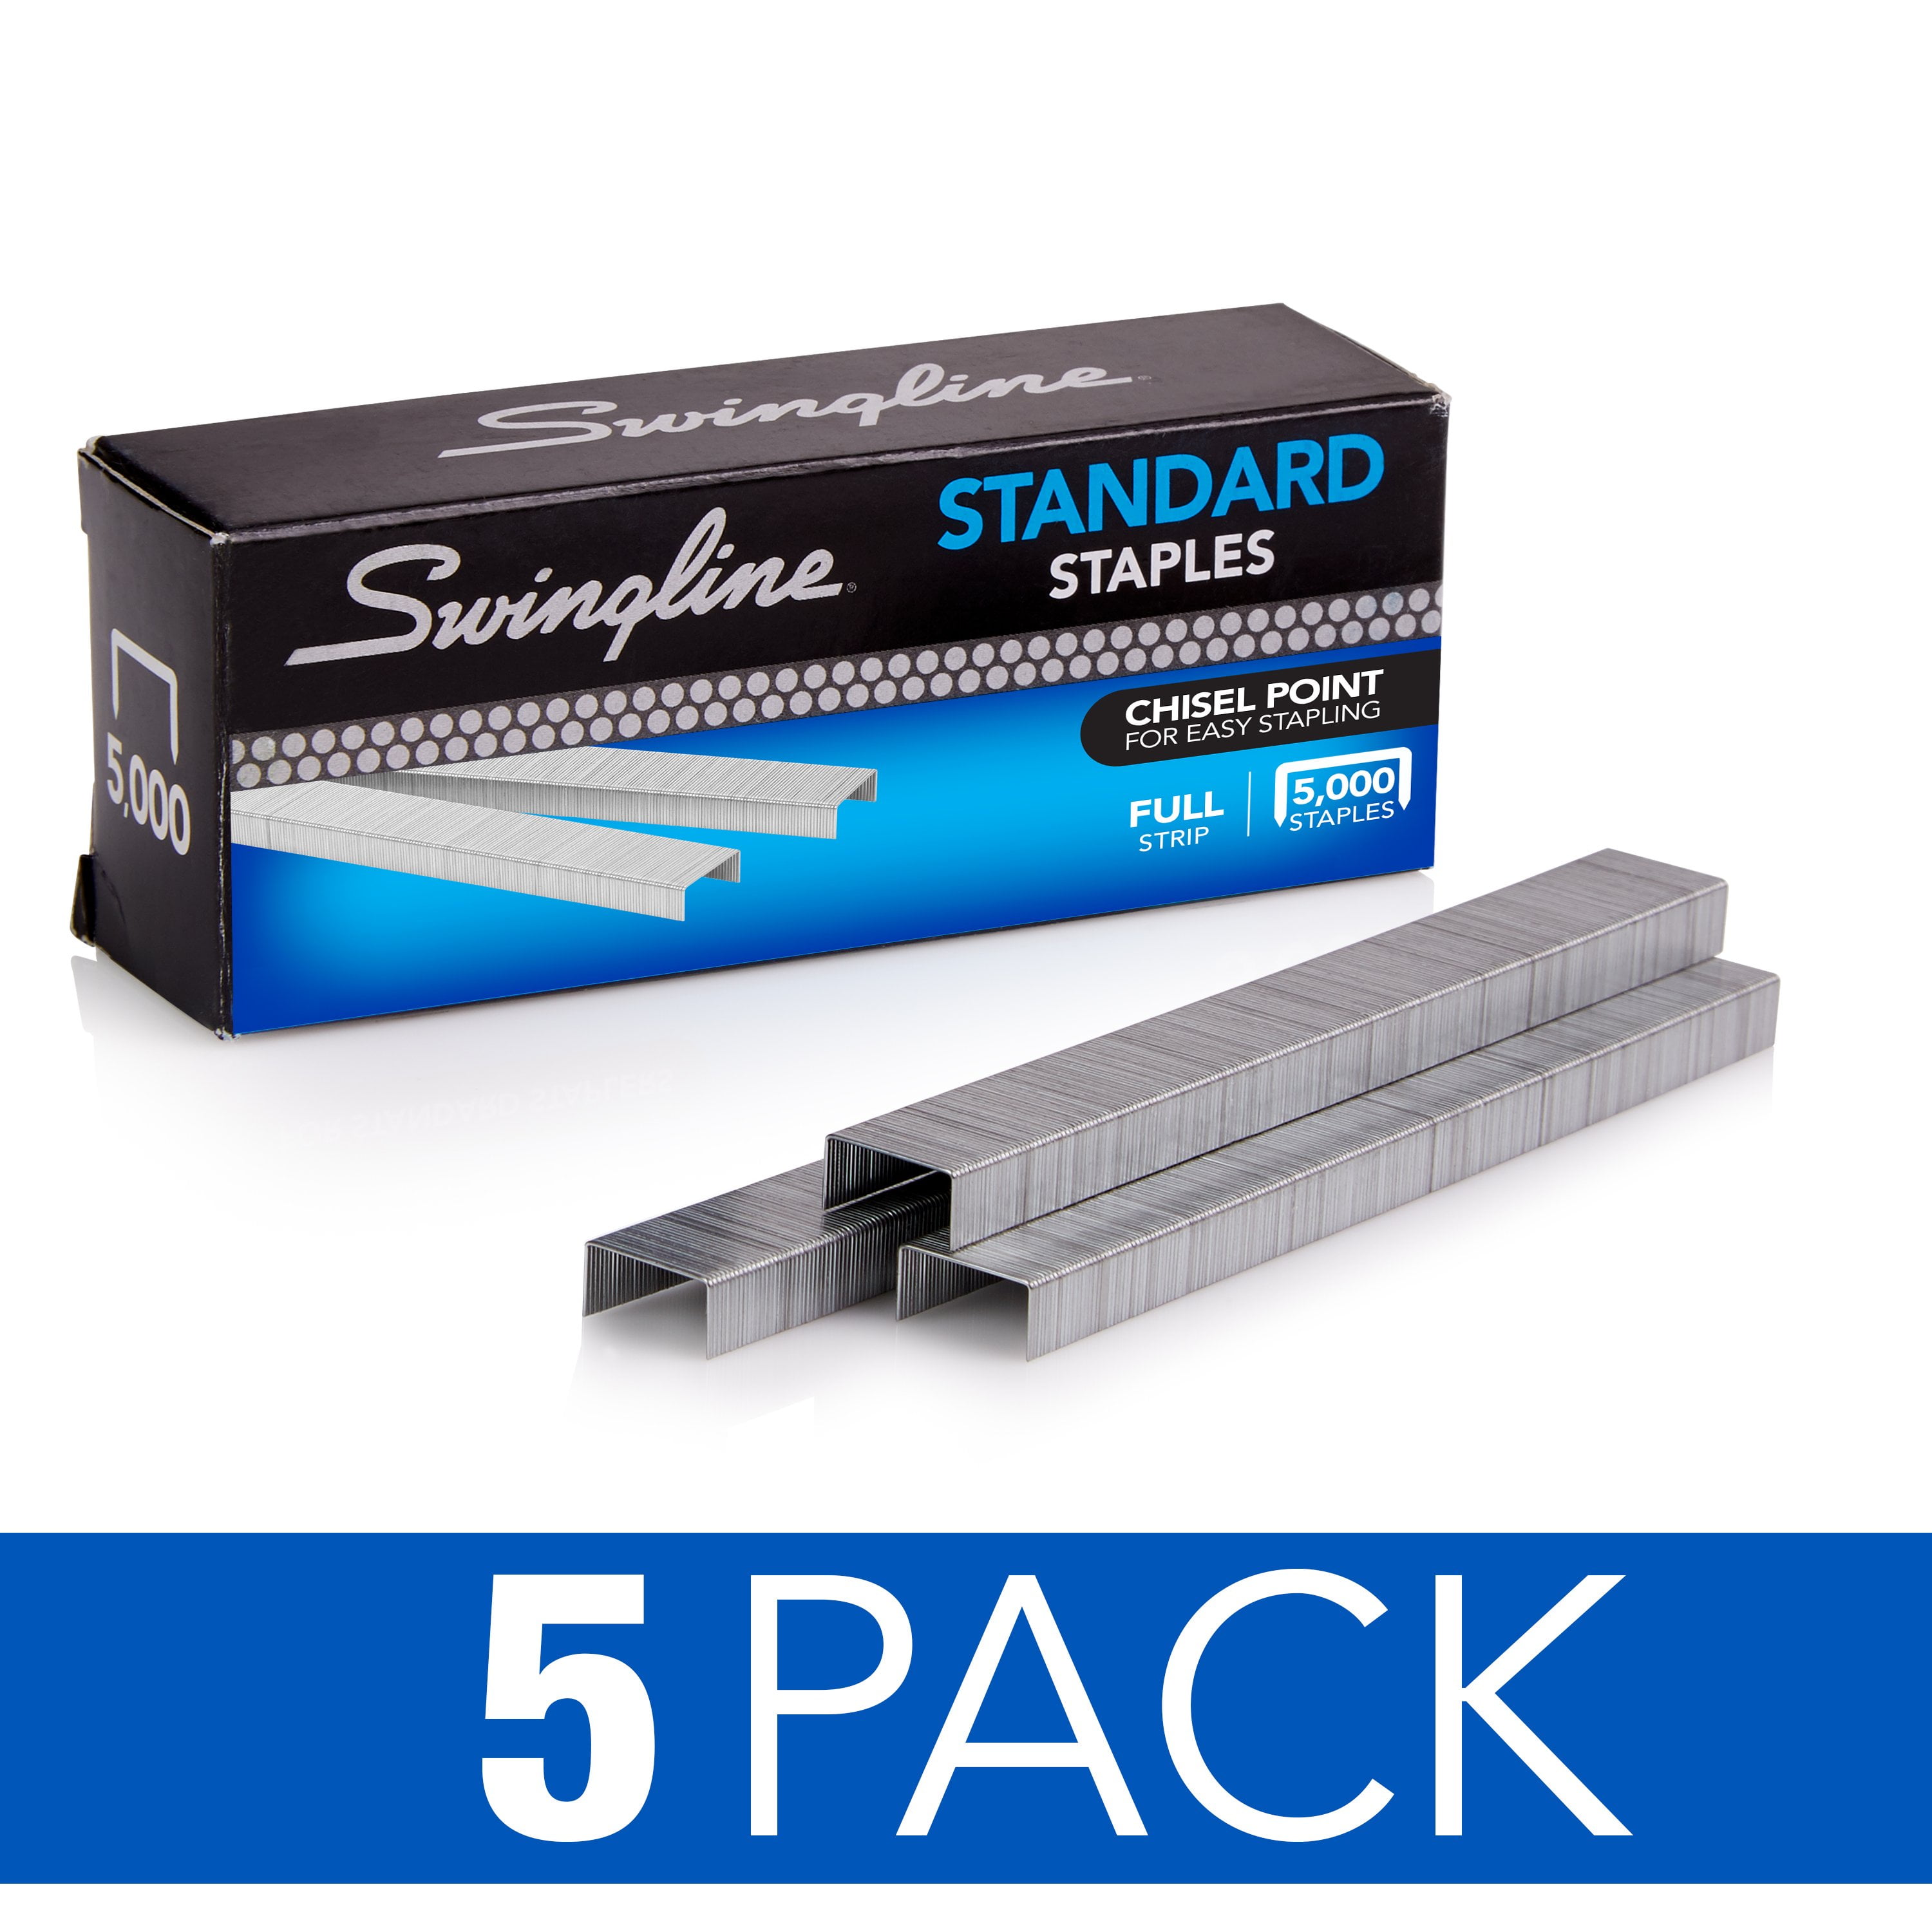 Basics Standard Stapler Staples, 1/4 Length, 50000 Count, 10-Pack  of 5000, Silver